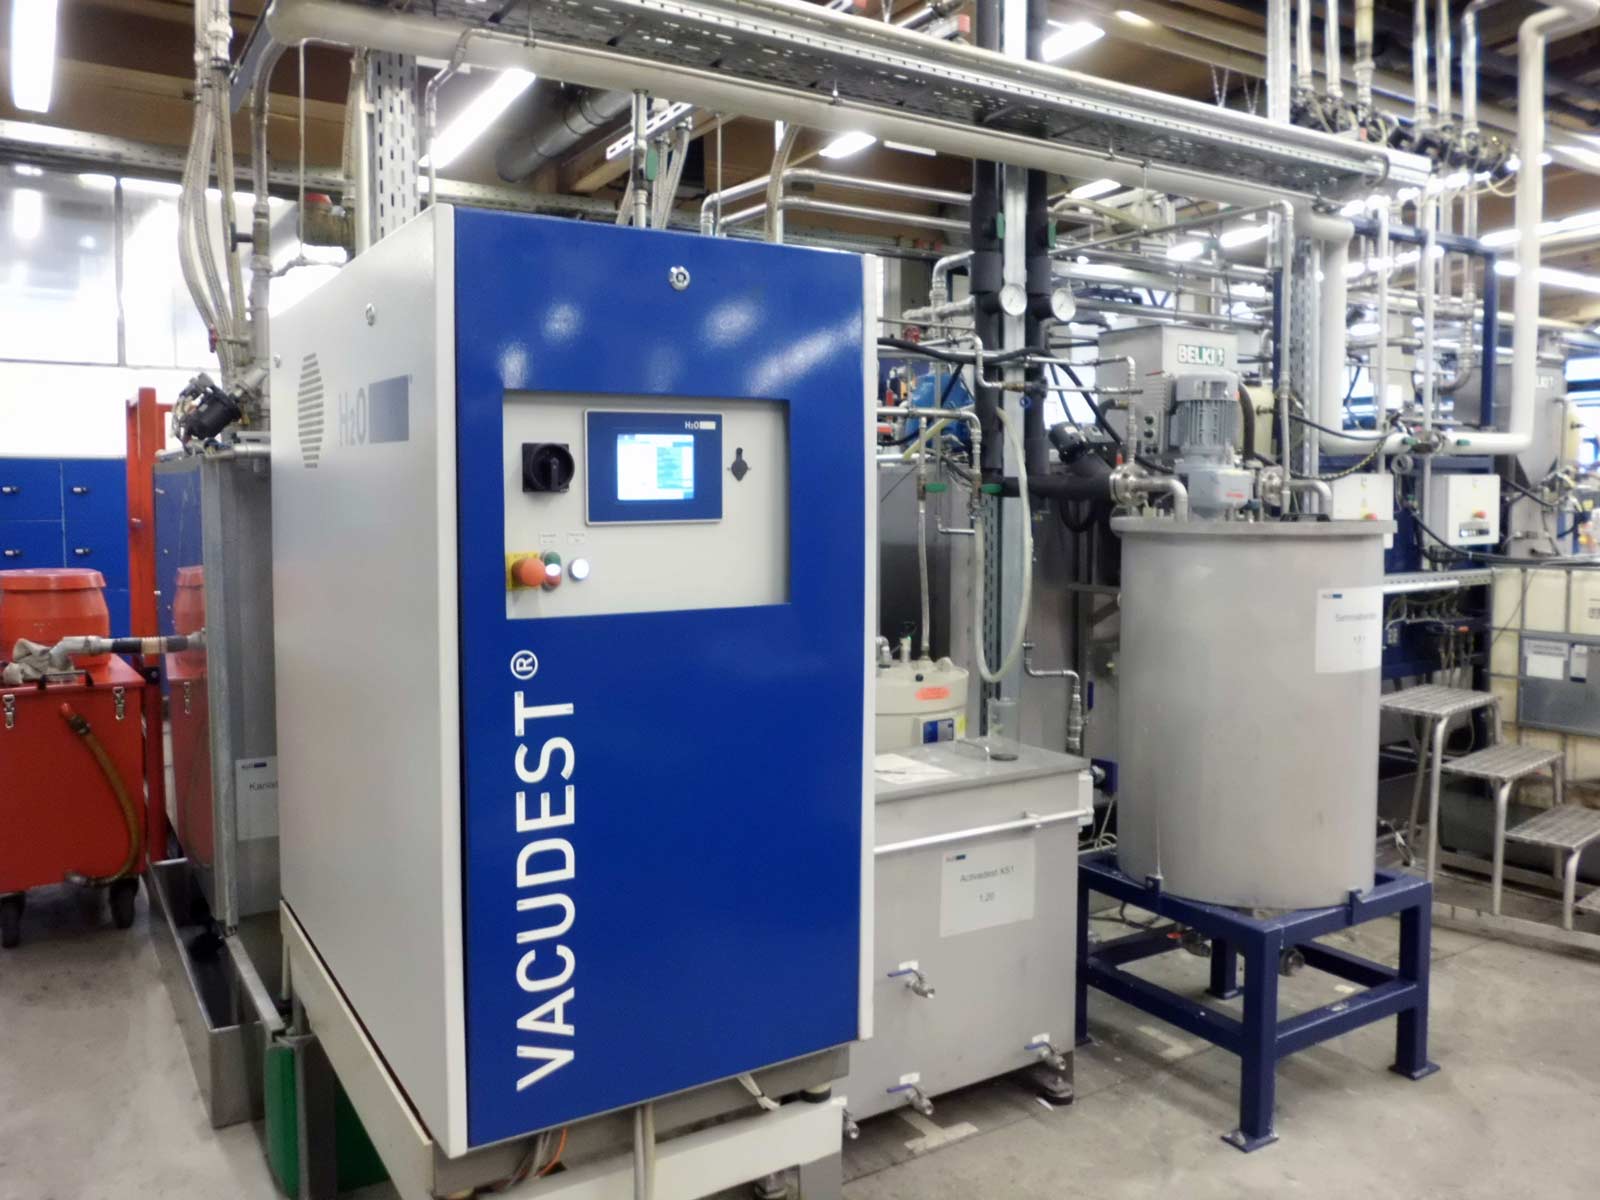 Urządzenie VACUDEST XS umożliwia firmie IWIS w Landsbergu recykling wody używanej do mycia części.